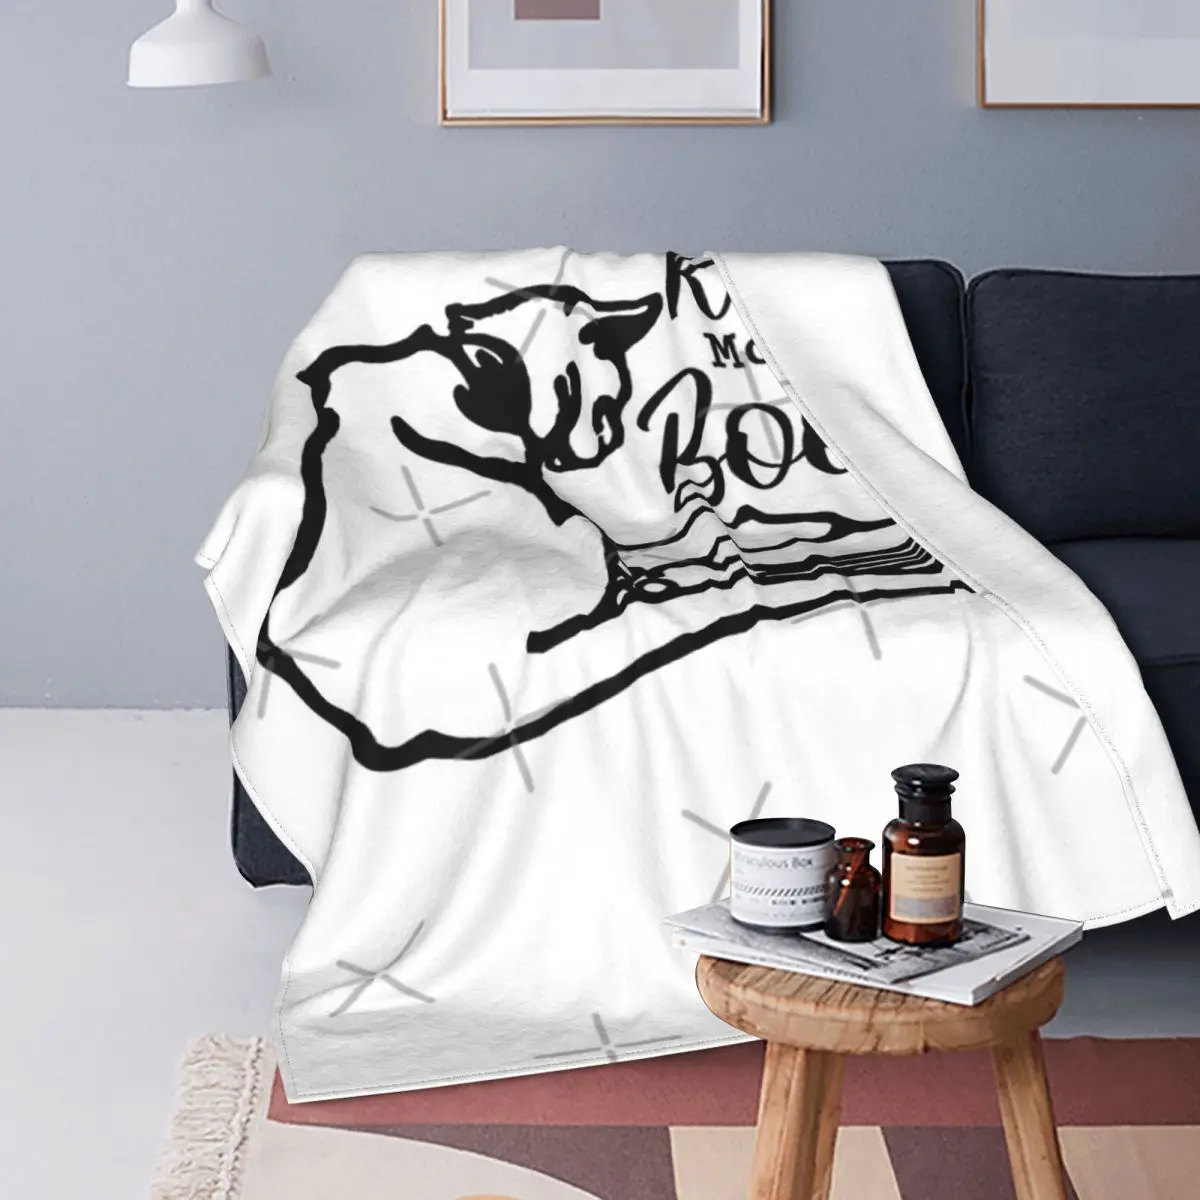 

Читайте больше книг-винтажное дизайнерское одеяло в виде кошки покрывало для кровати Клетчатый плед для дивана двойное одеяло пляжное поло...